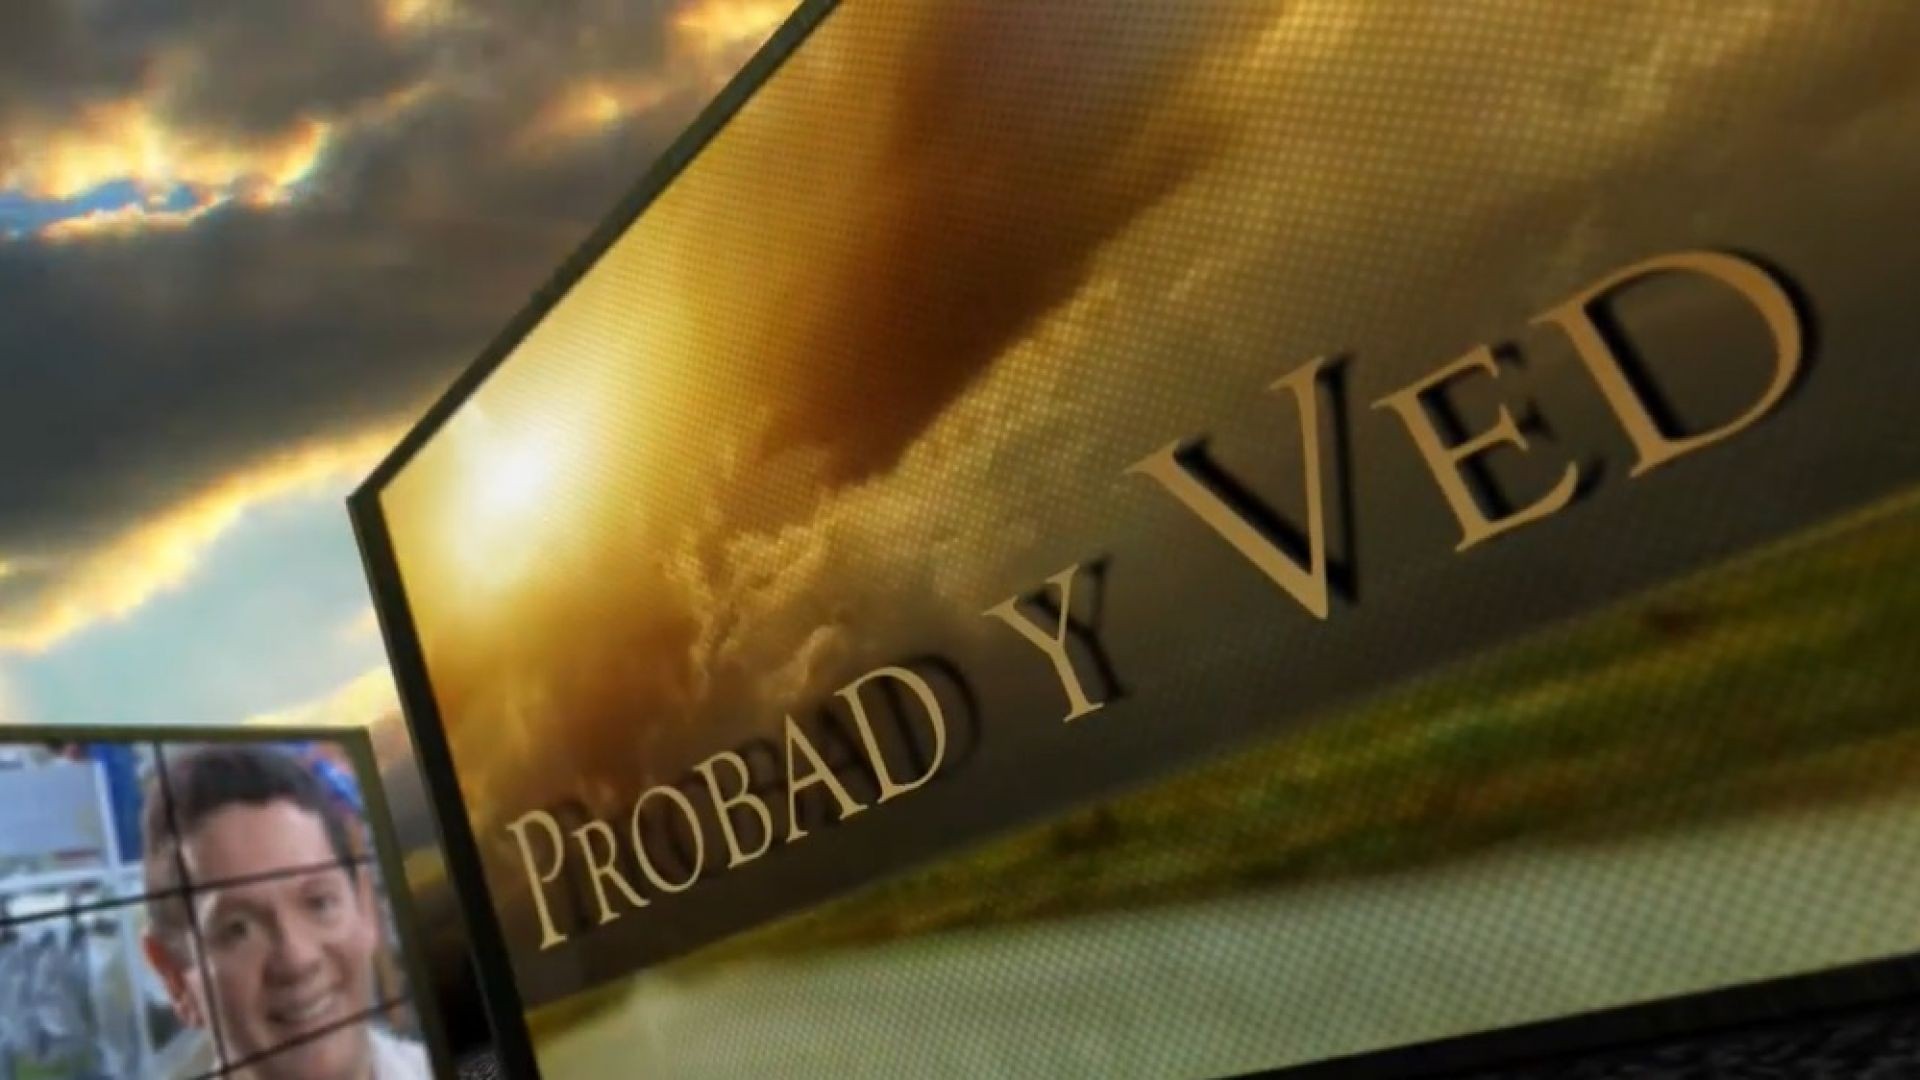 ⁣Probad y Ved 2013 - Fiel a toda prueba - 06/Jul